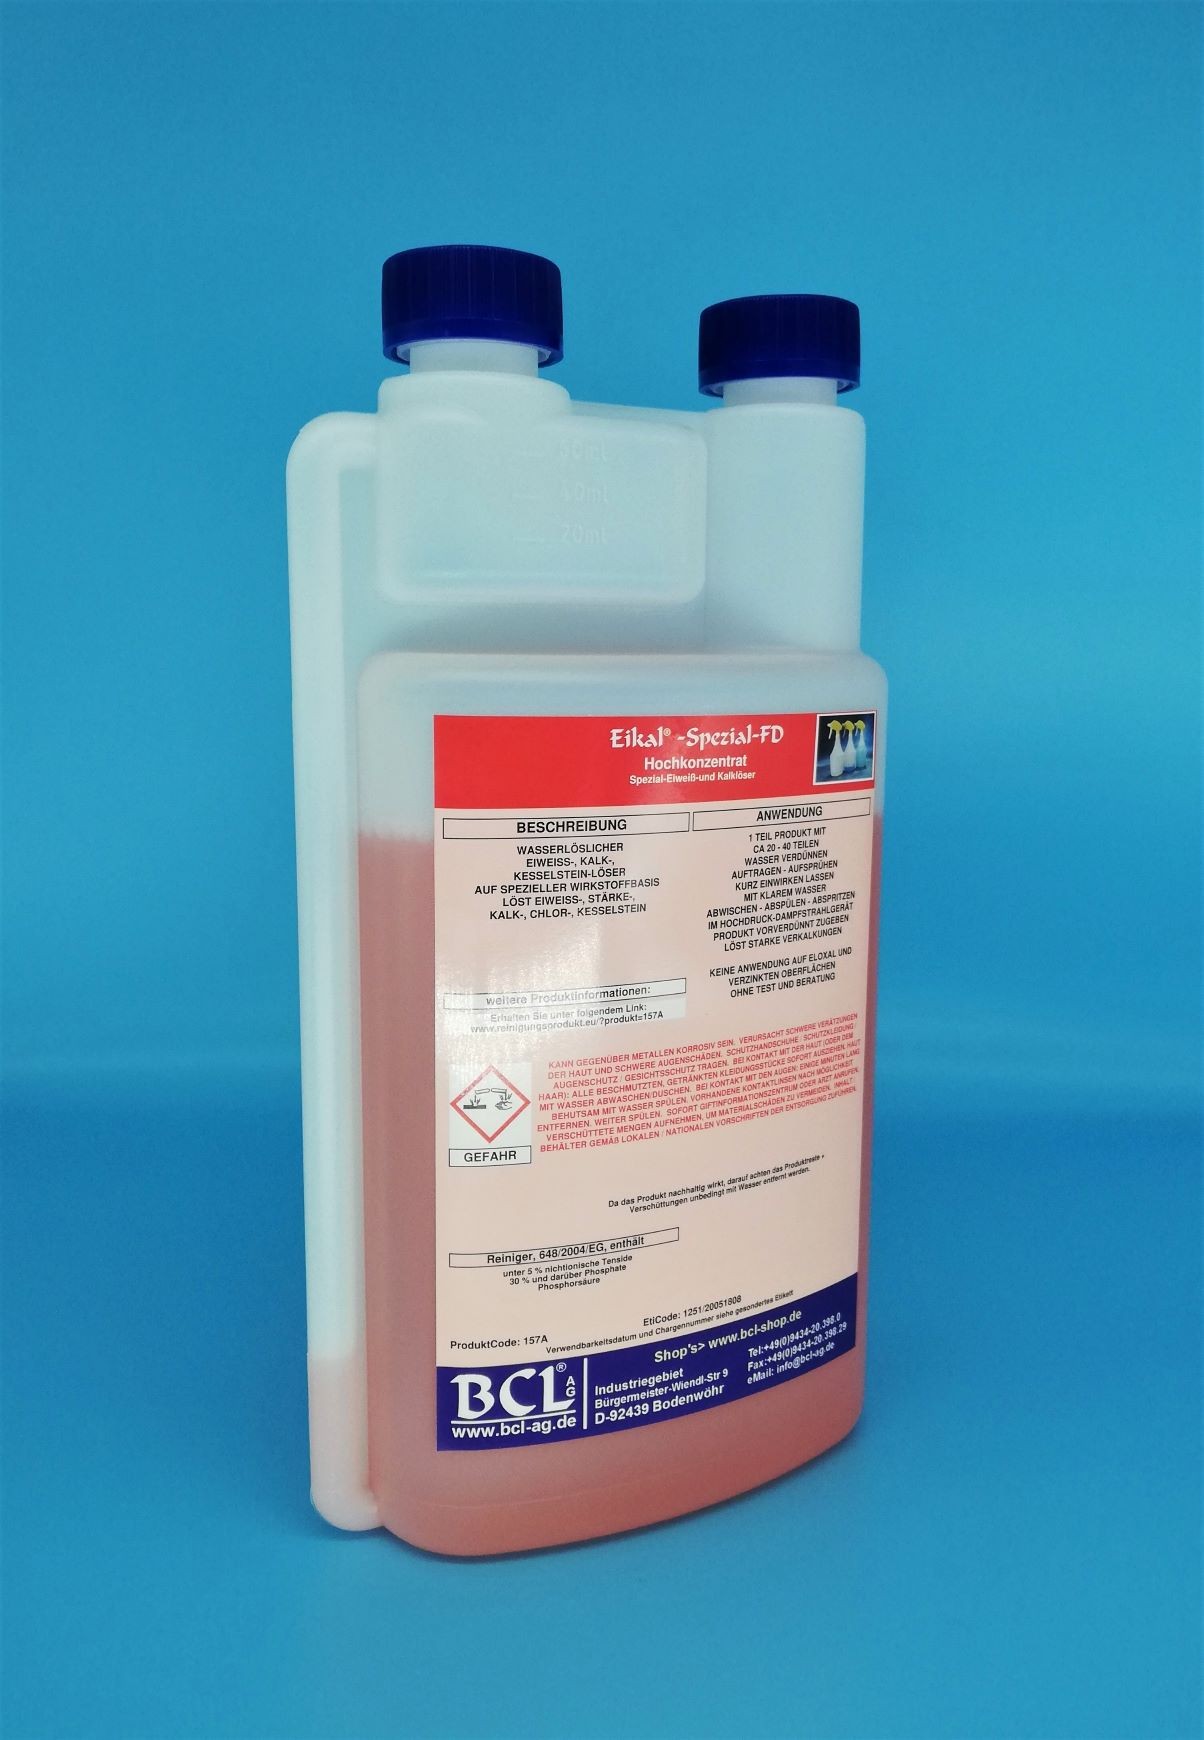 Eikal®-Spezial-FD -1 Kg -Dosierflasche